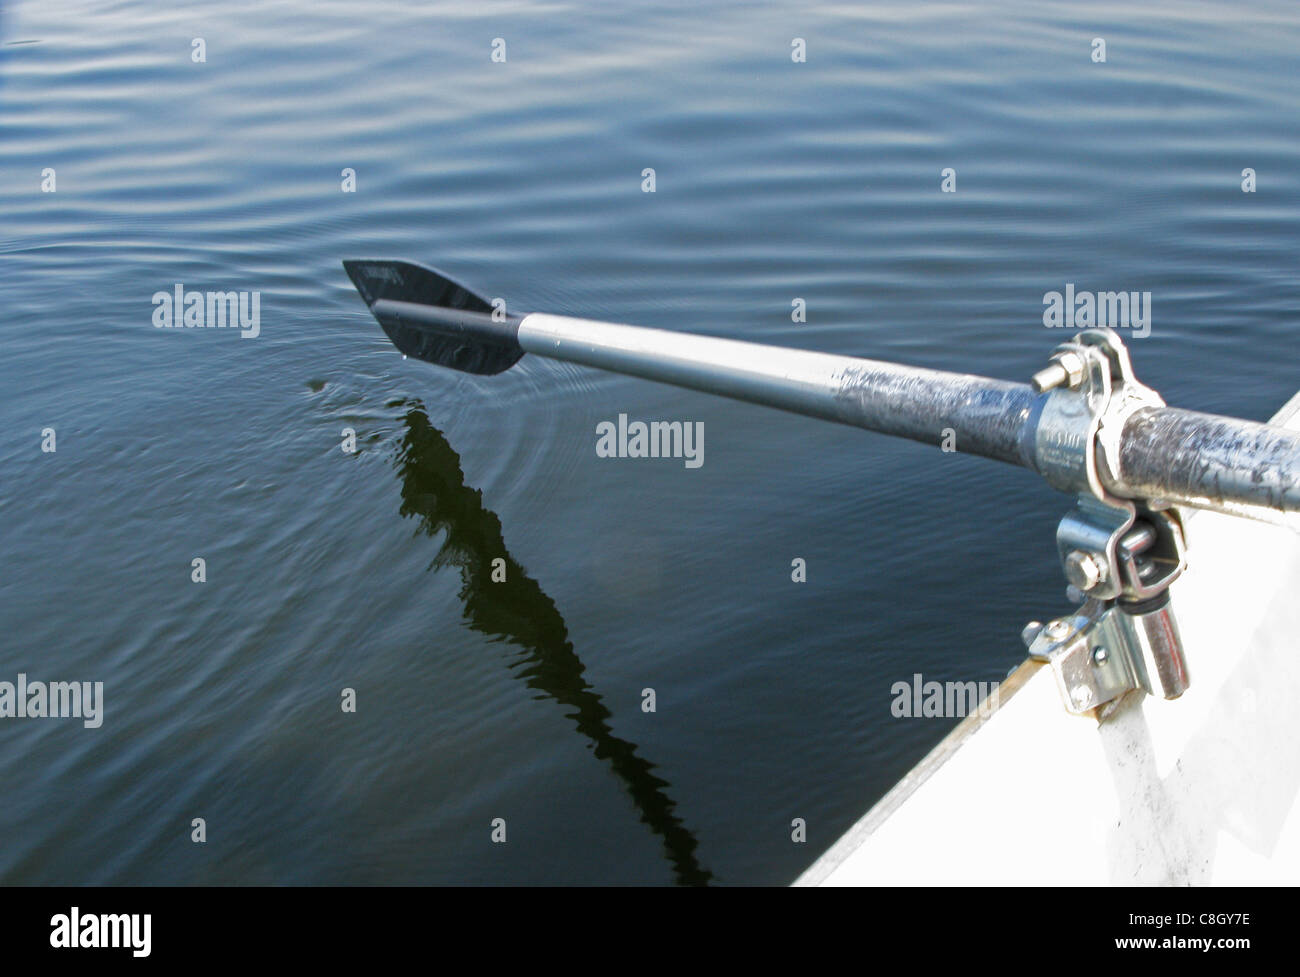 Un remo de un bote de remos ligeramente por encima de la superficie del agua. Foto de stock